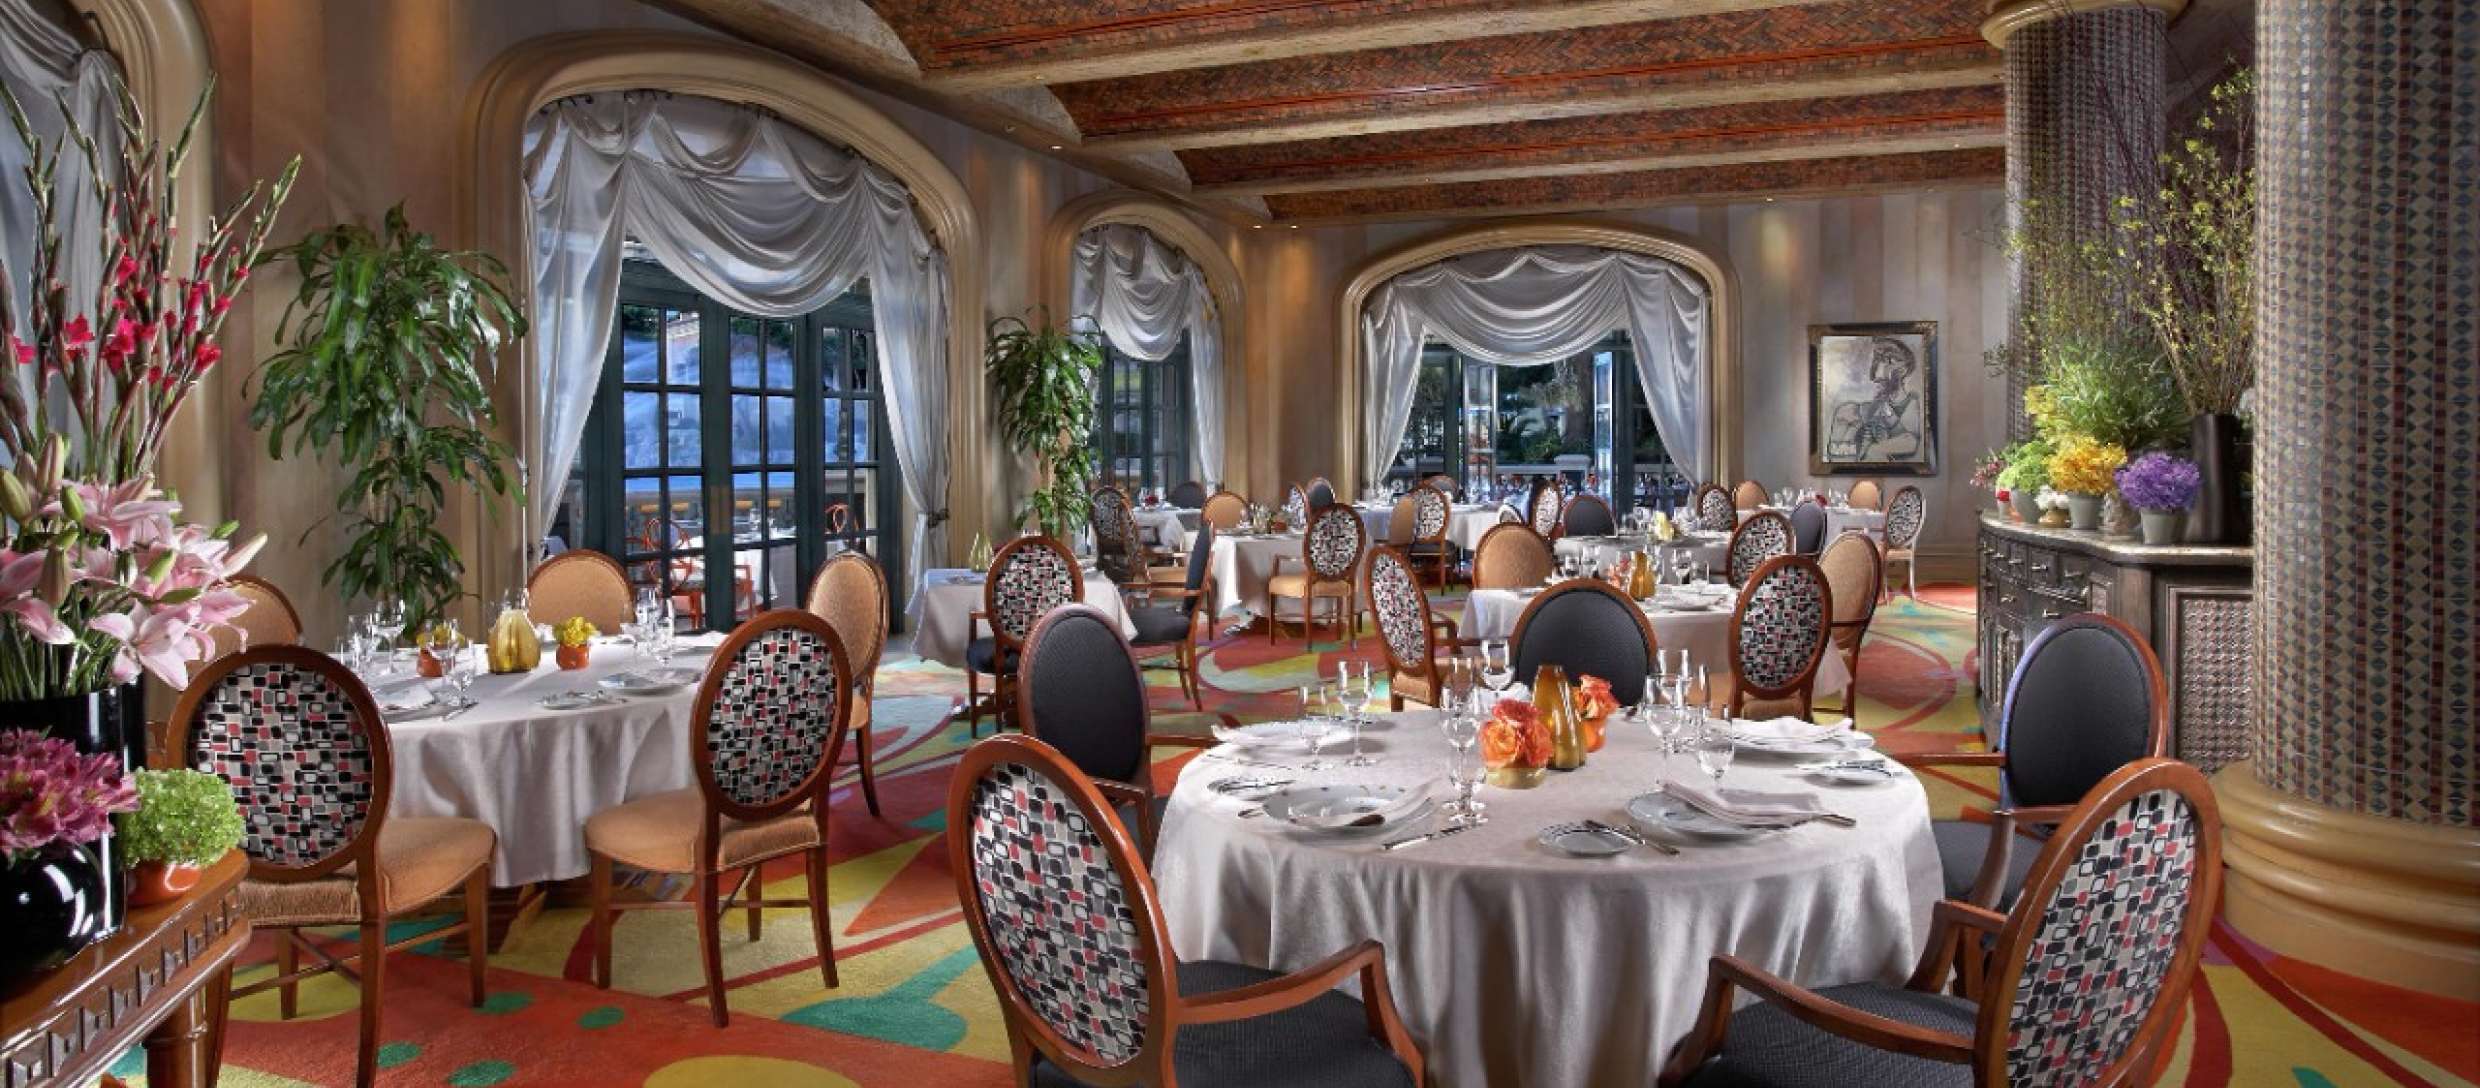 Picasso interior of restaurant